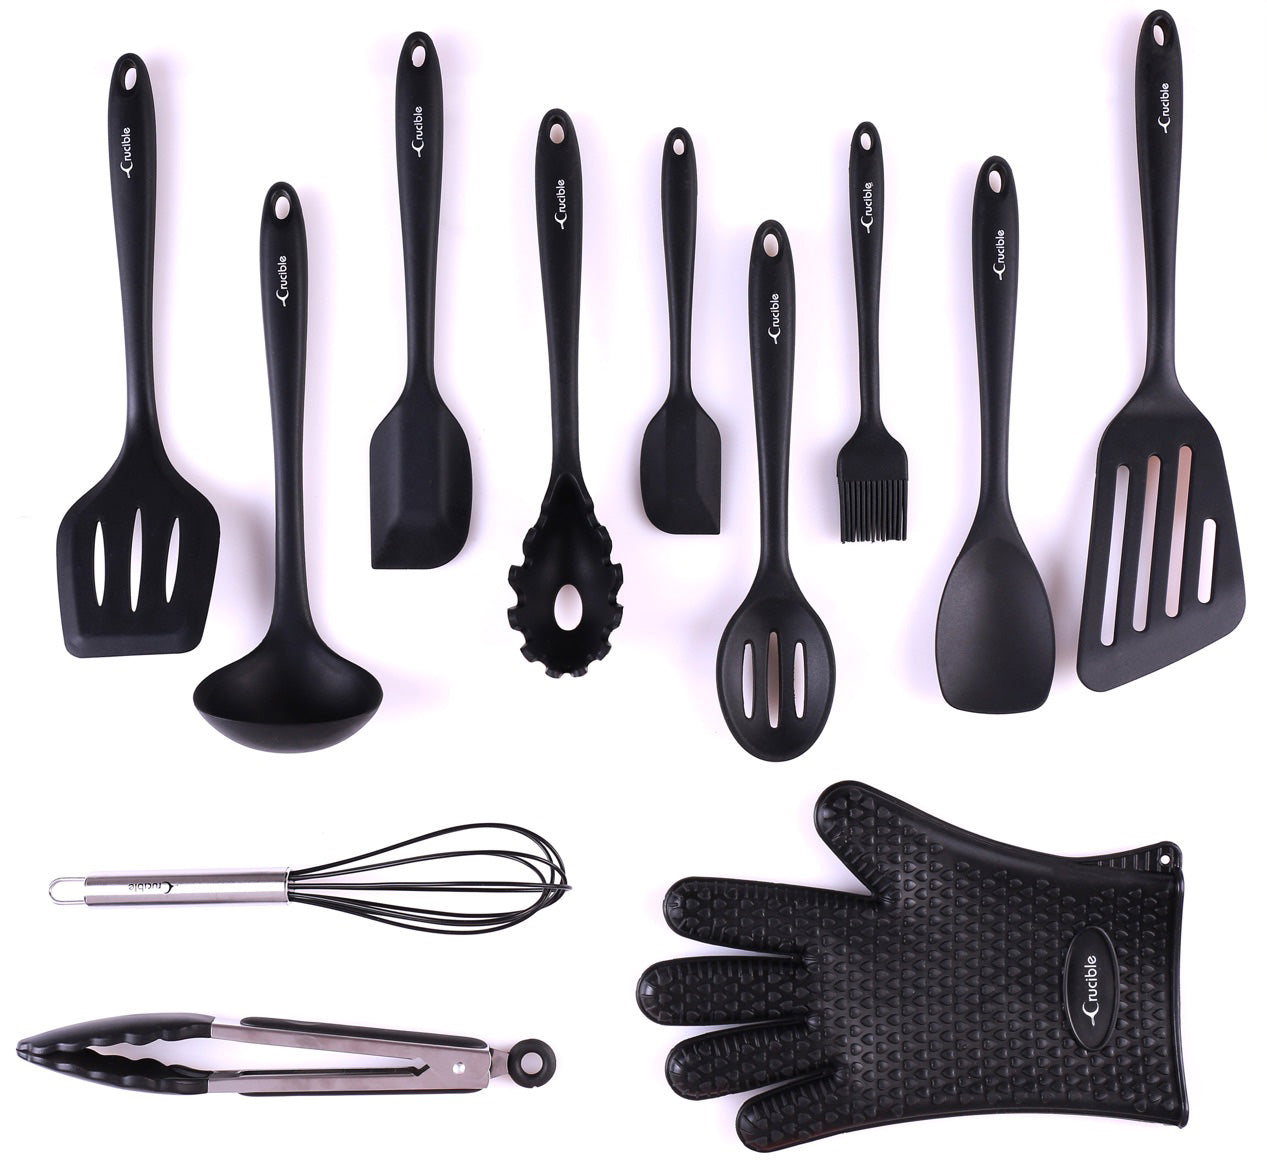 Набор посуды, полный силиконовый набор кухонных инструментов для выпечки и приготовления пищи из 12 предметов, набор посуды, кухонные гаджеты - черный - Utensilios de Cocinas